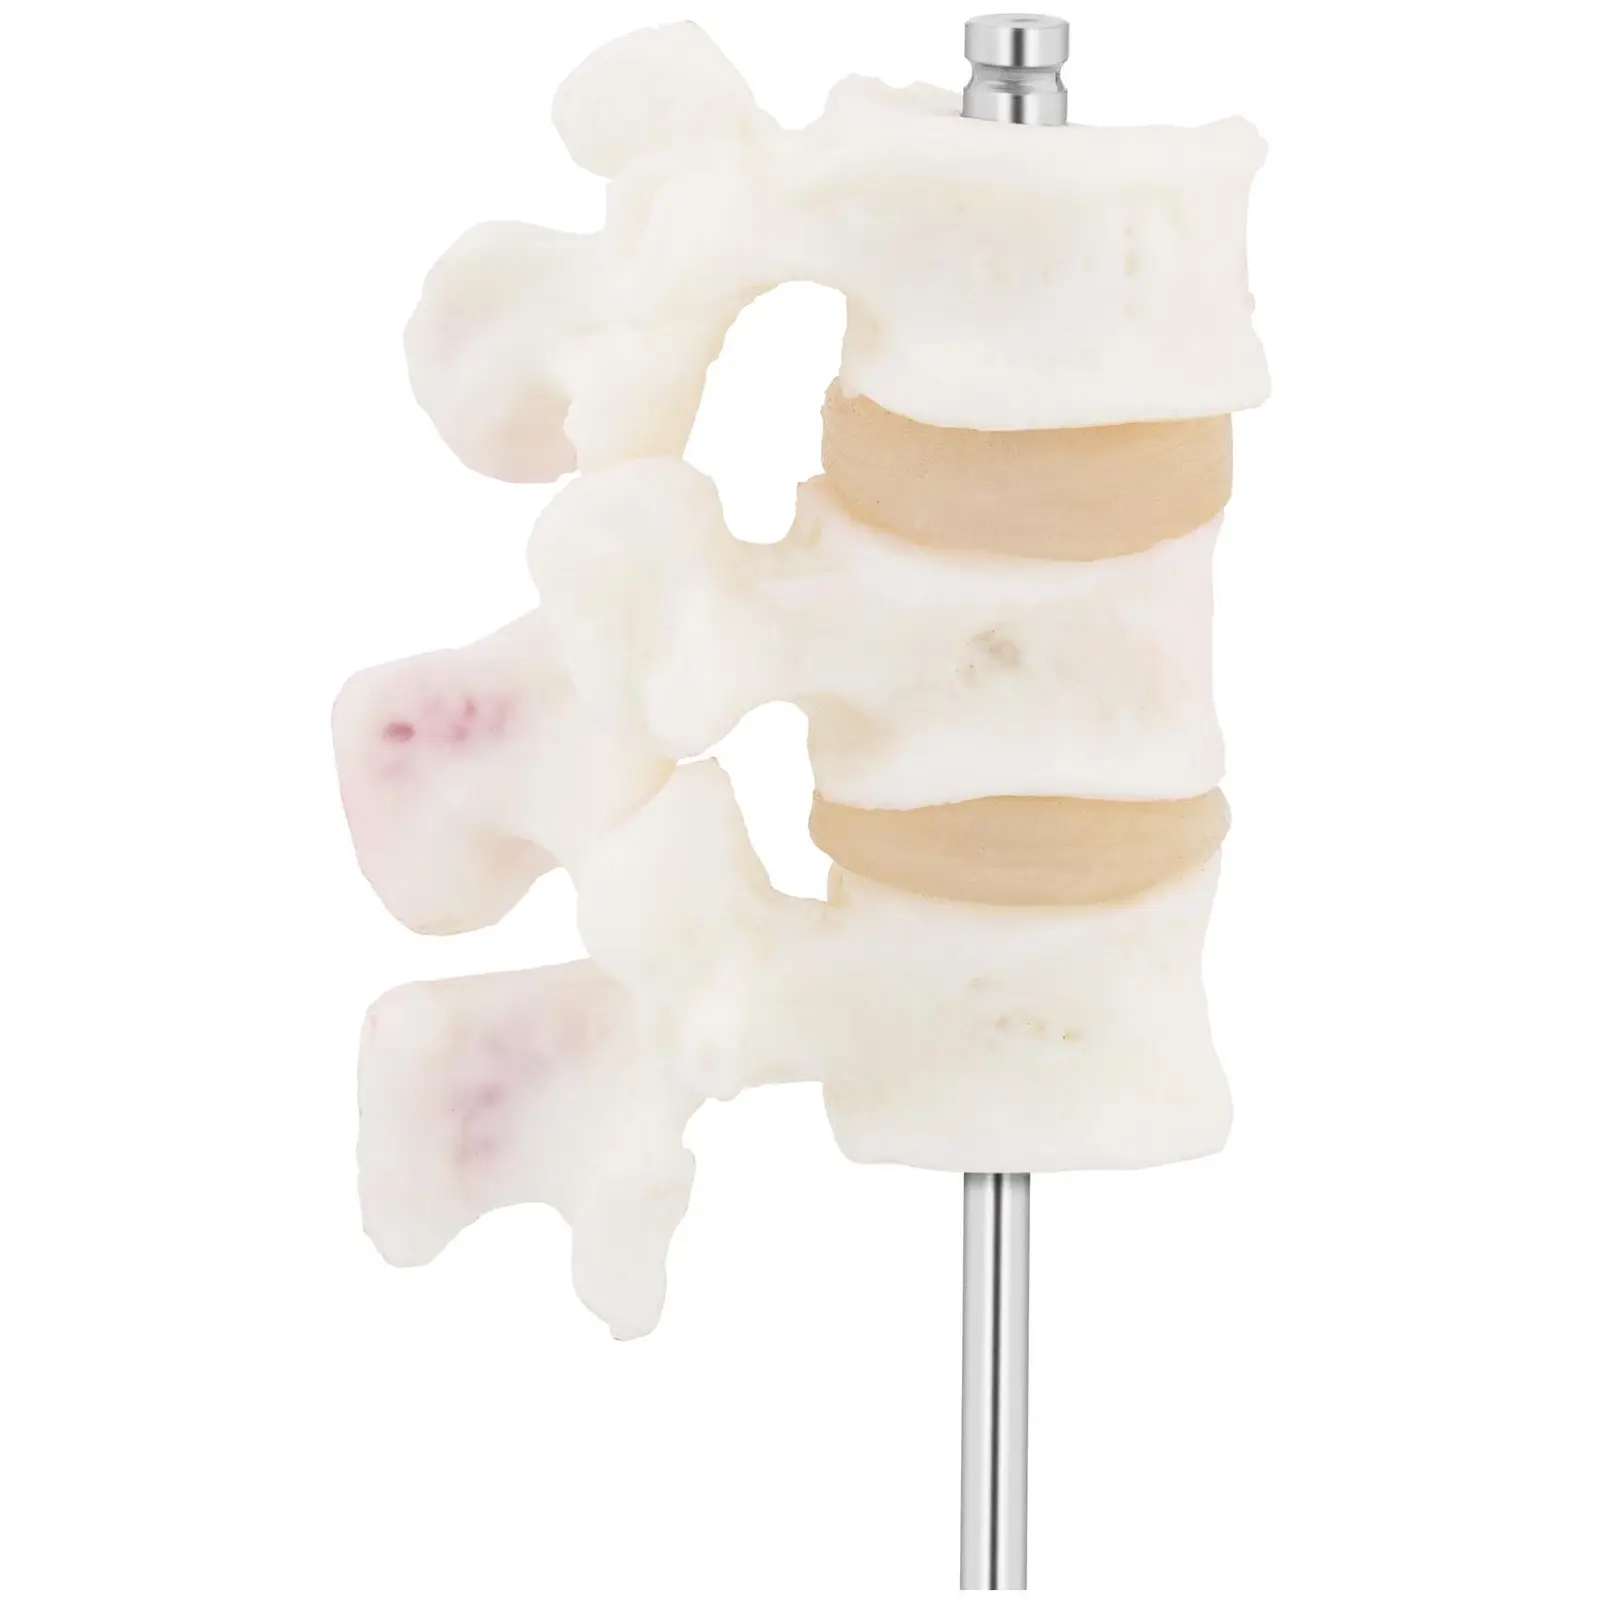 Modelo anatómico de vértebras lumbares - osteoporosis - en color